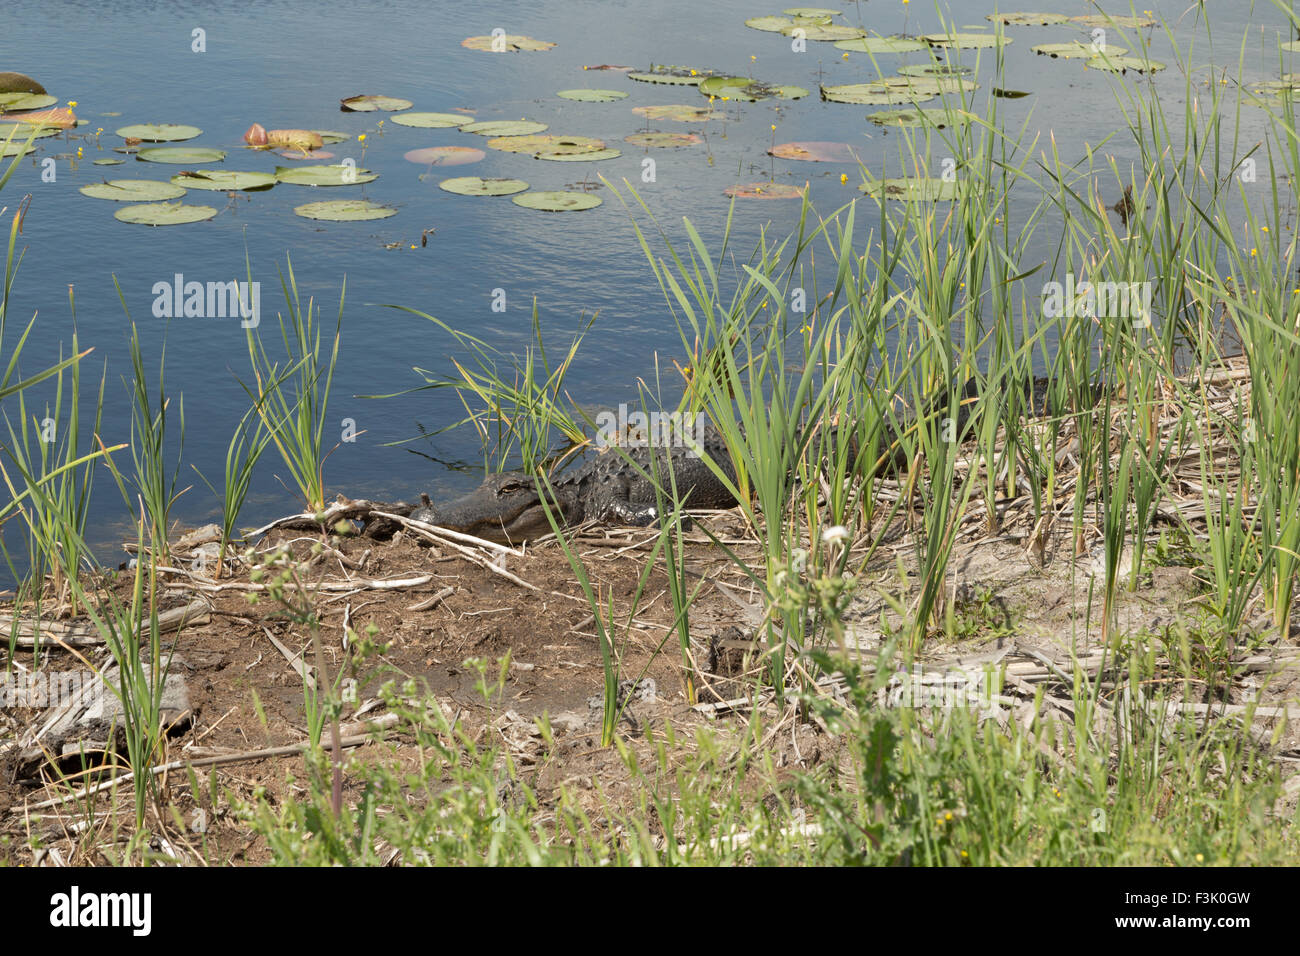 Une photographie d'un alligator dans la nature près de Savannah en Géorgie. Banque D'Images